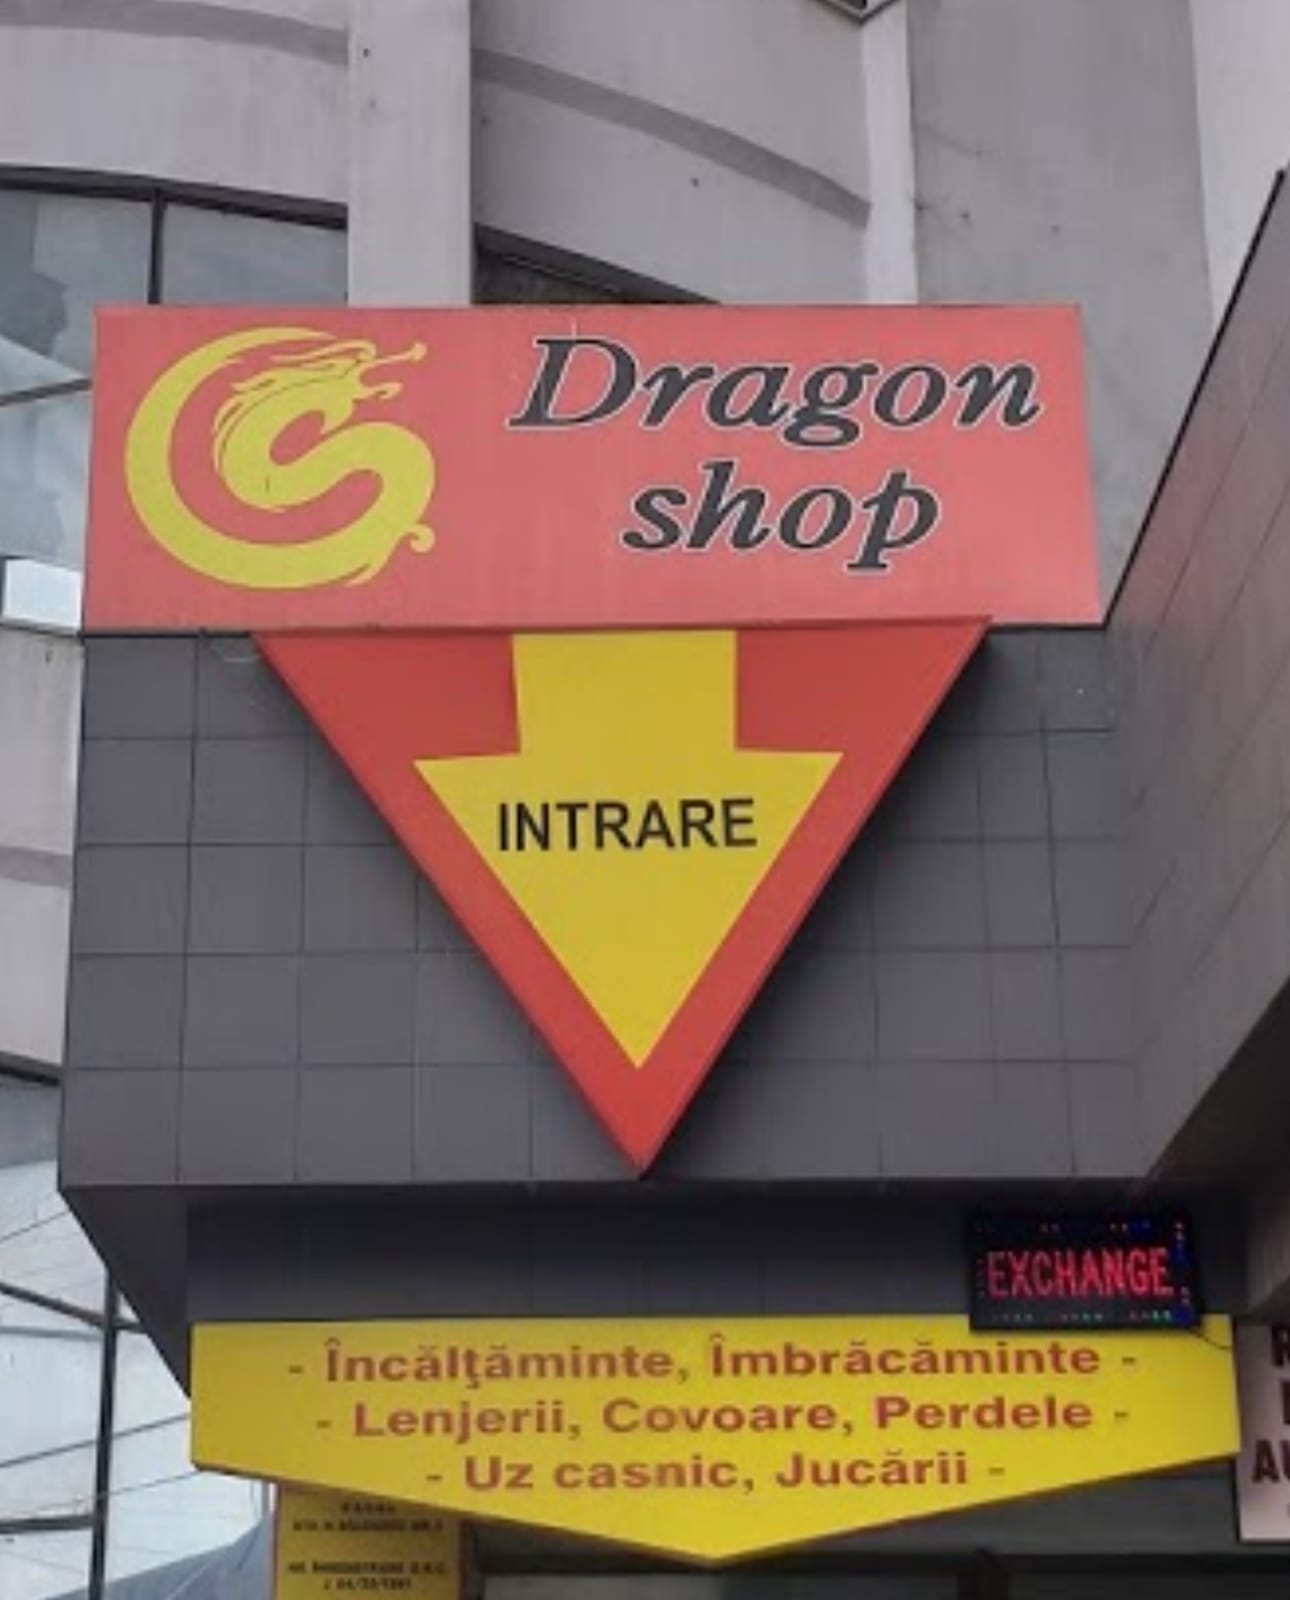 DRAGON shop